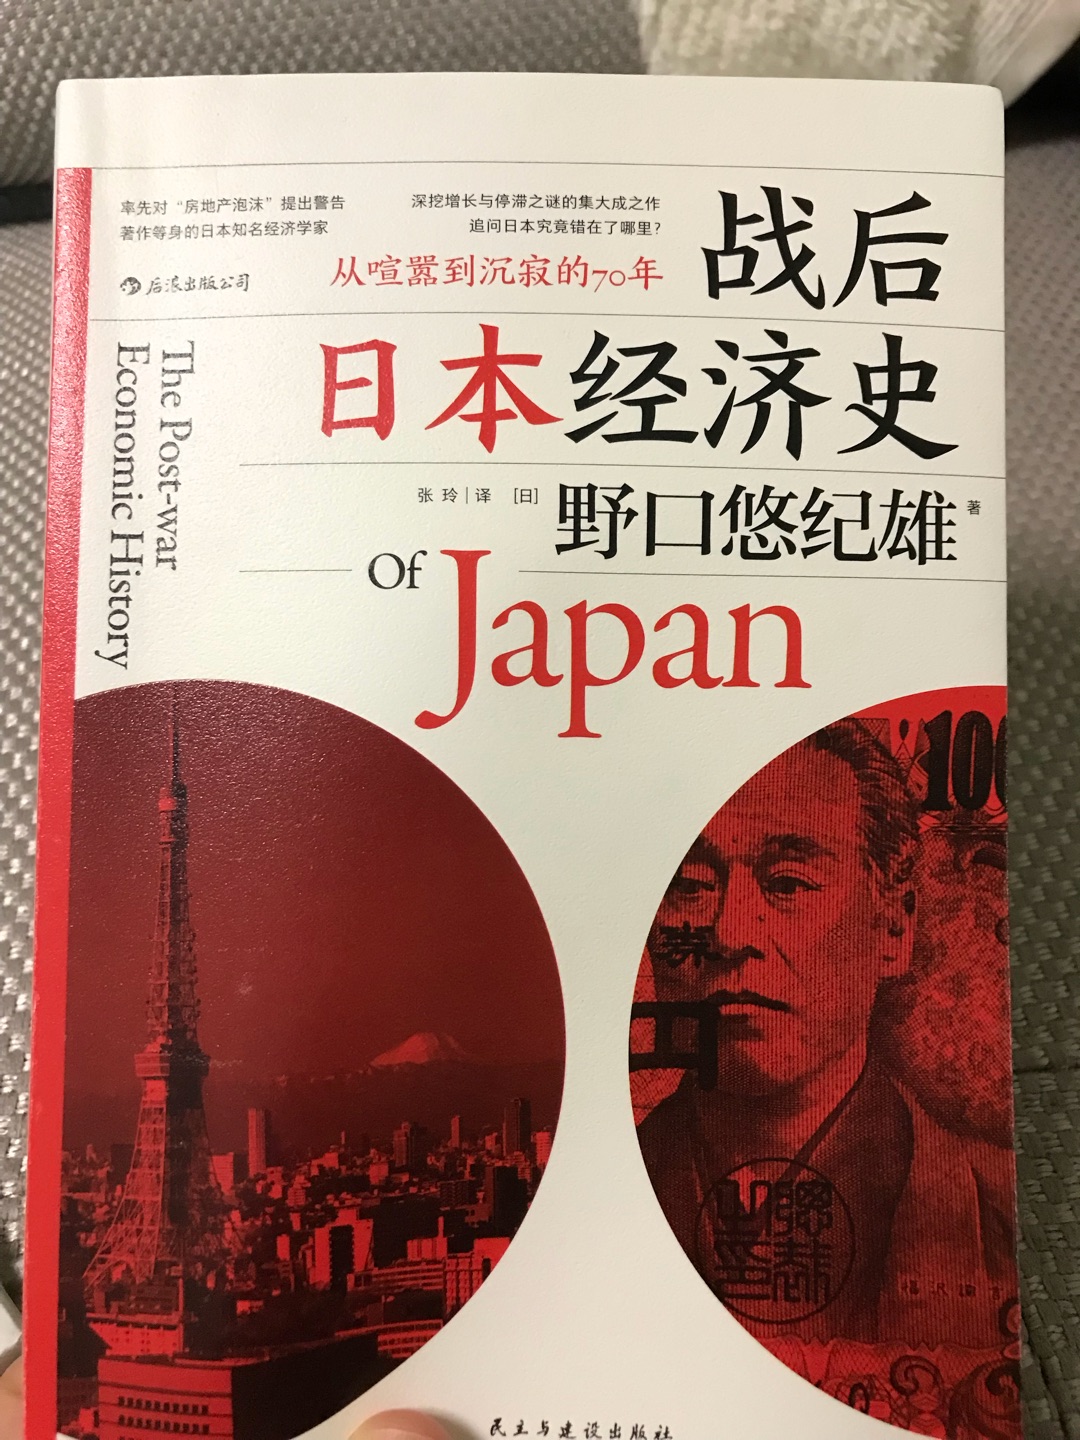 不错，比较客观介绍了战后日本经济发展情况，对中国很有借鉴意义。